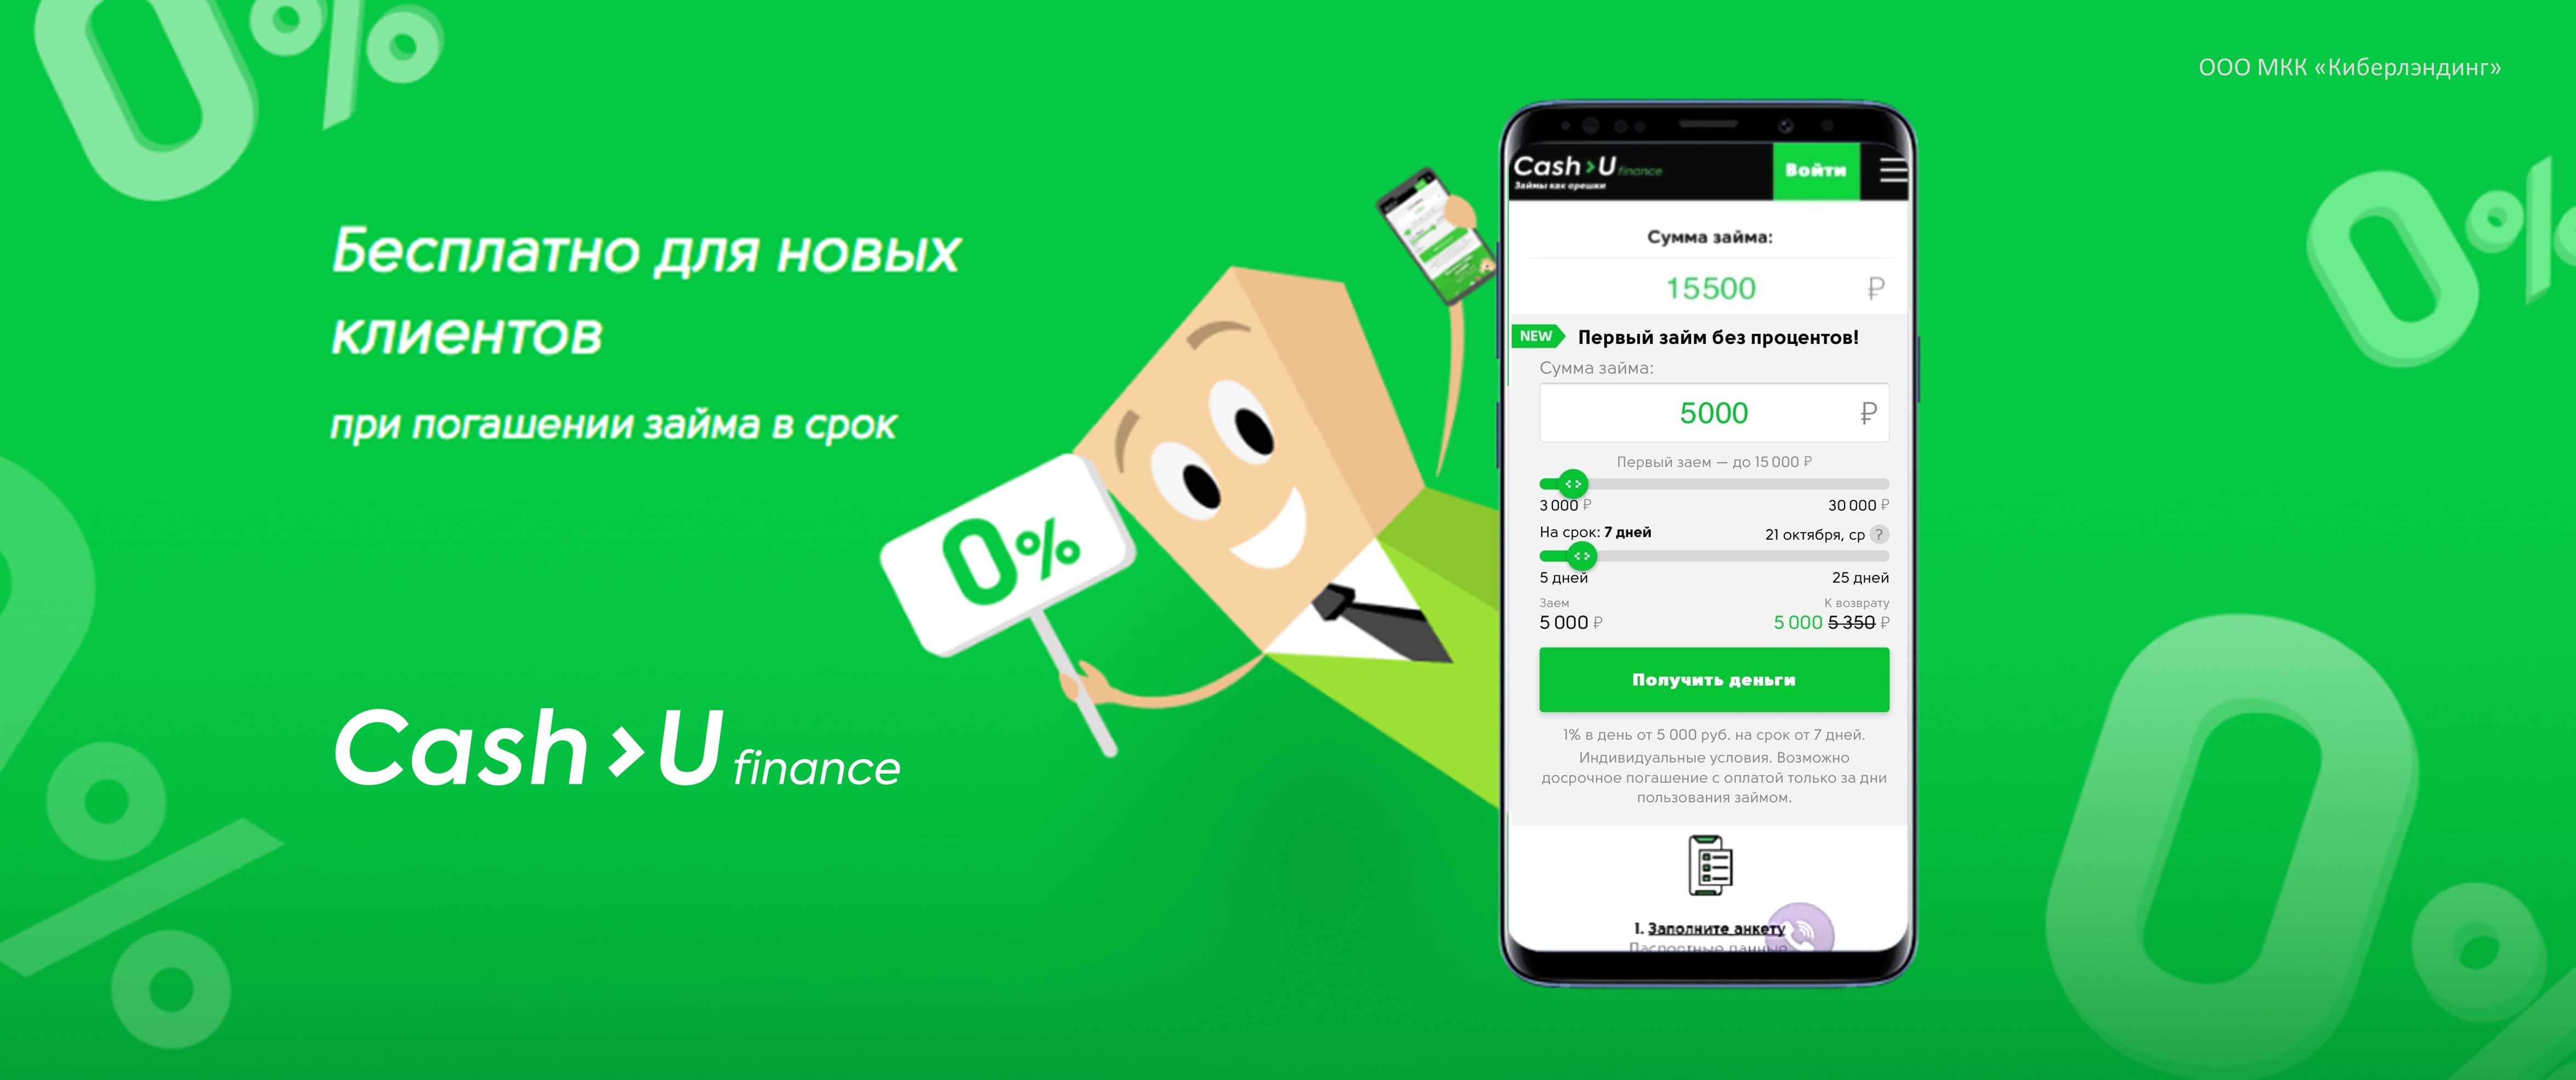 Cash-U Finance запустила акцию «0% для новых клиентов»